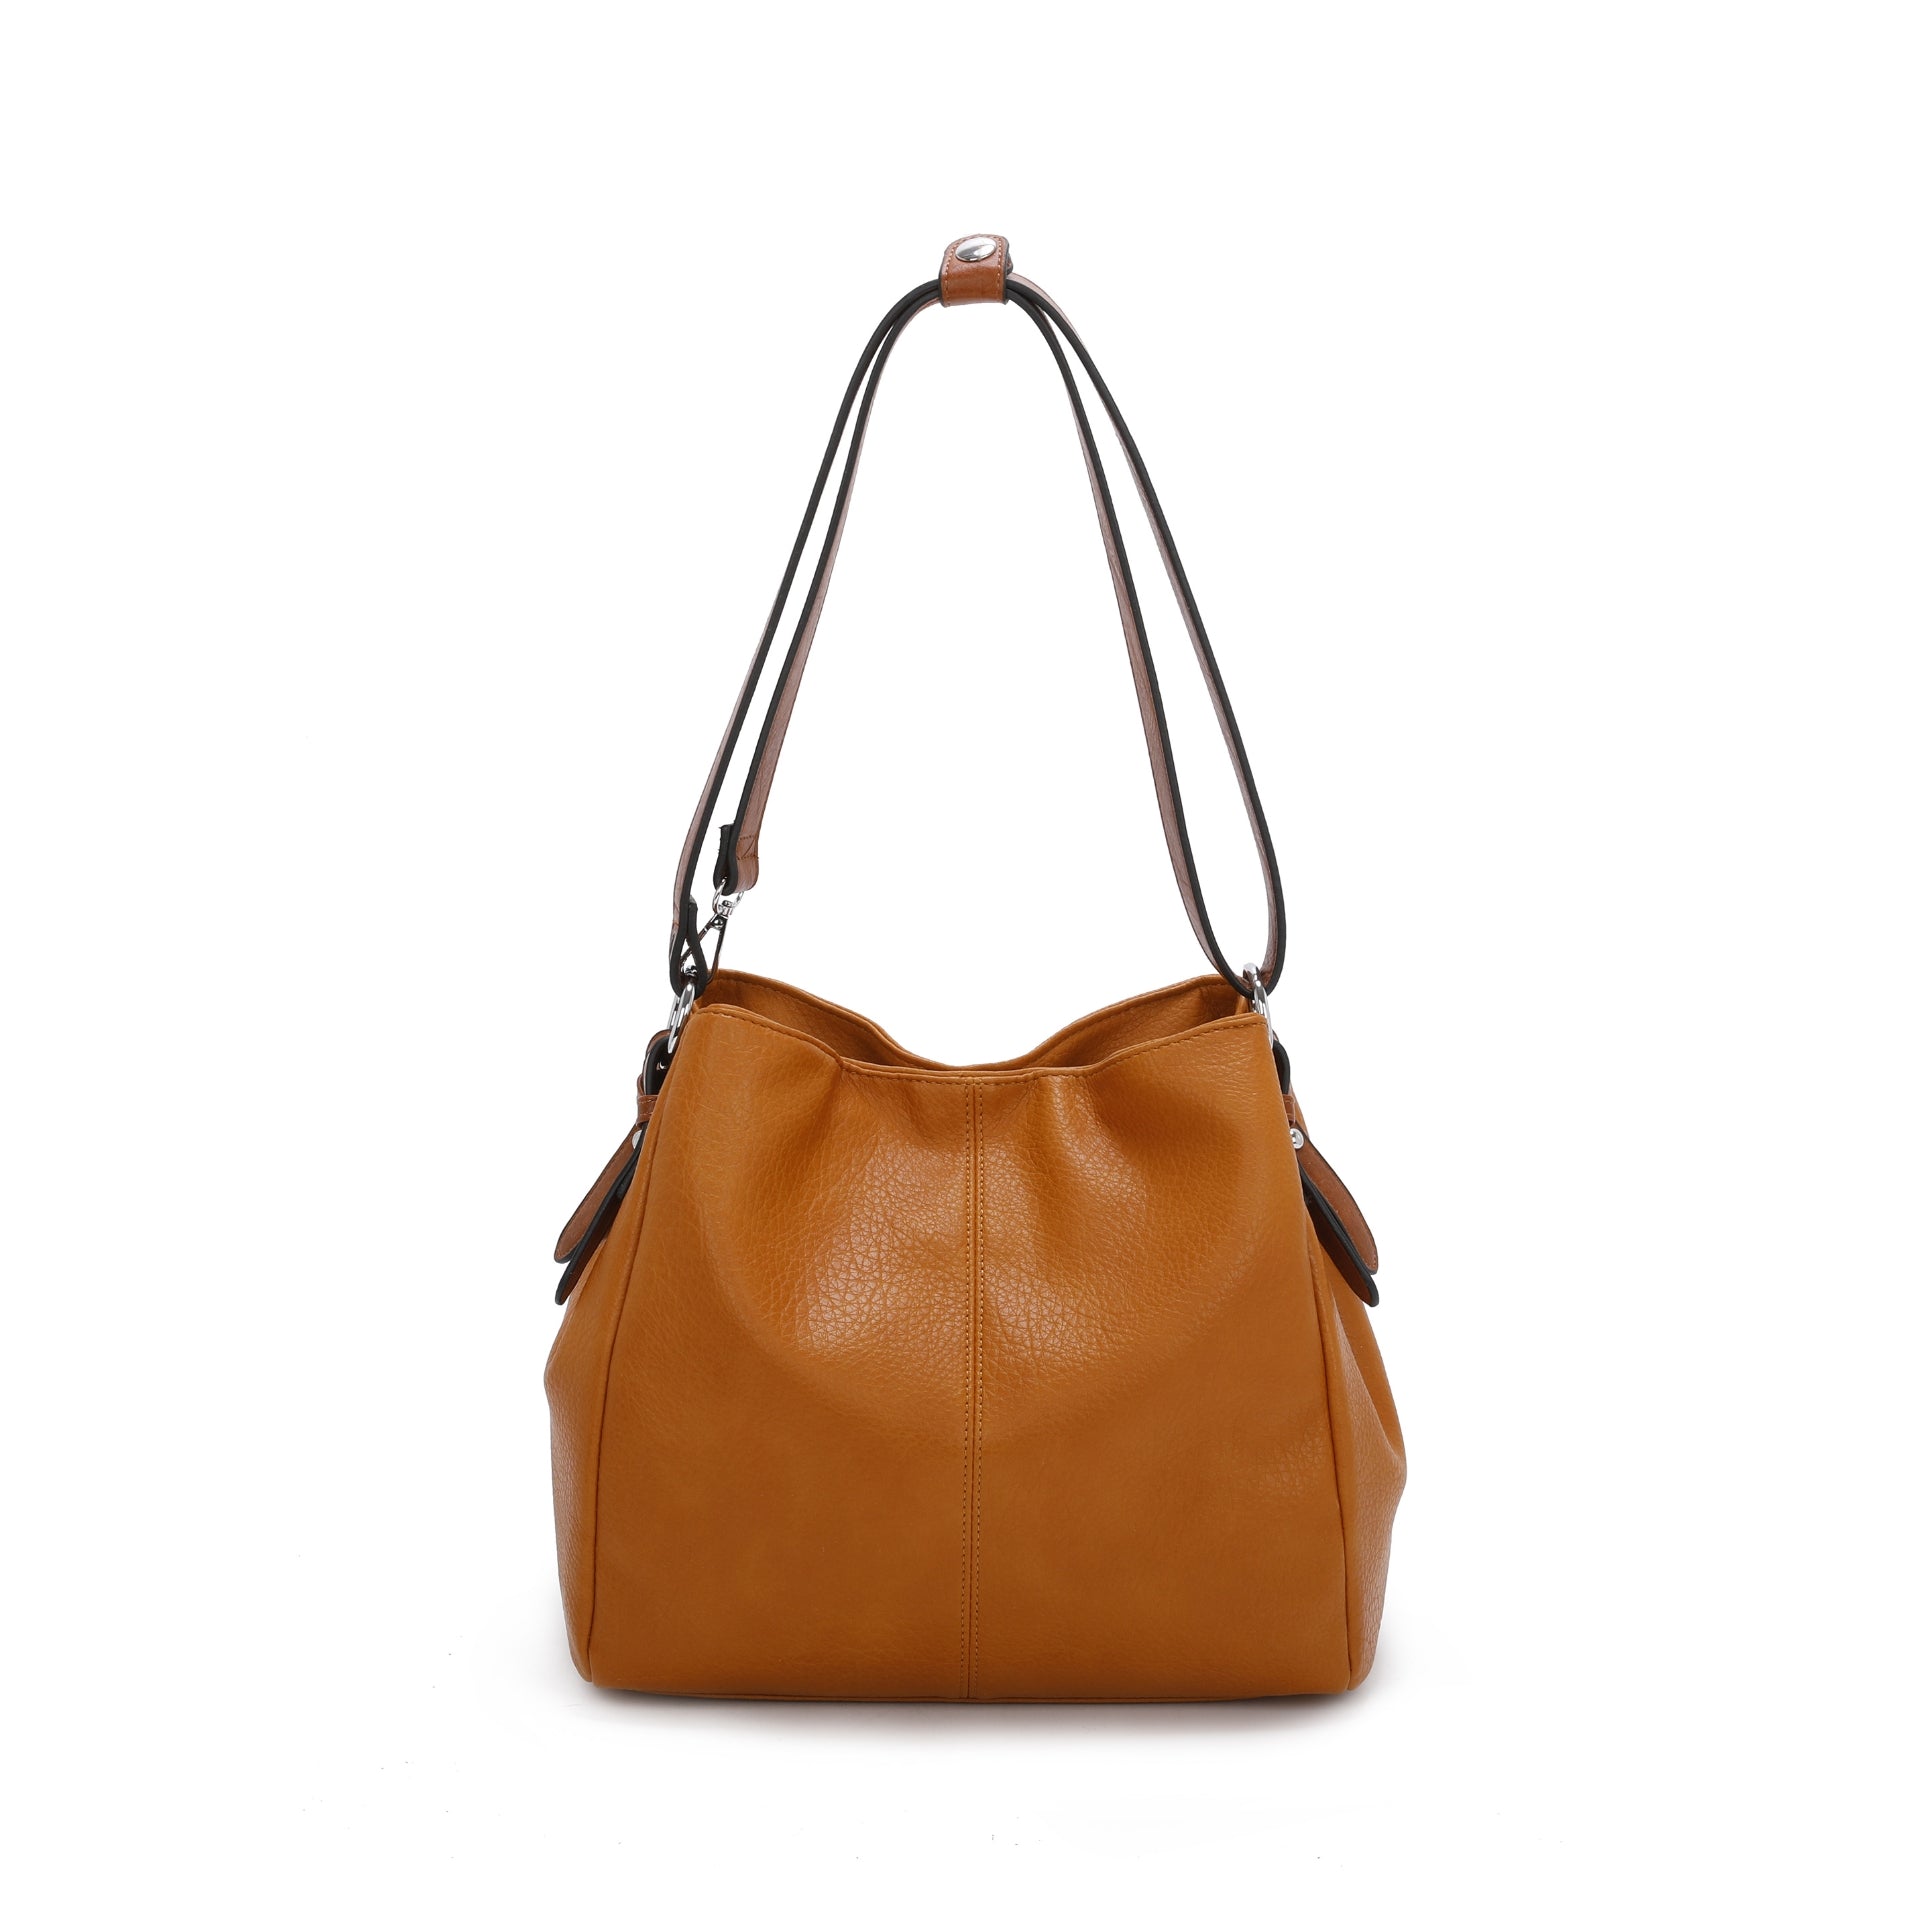 Womens Hobo Shoulder handbag With Single Large Shoulder Strap